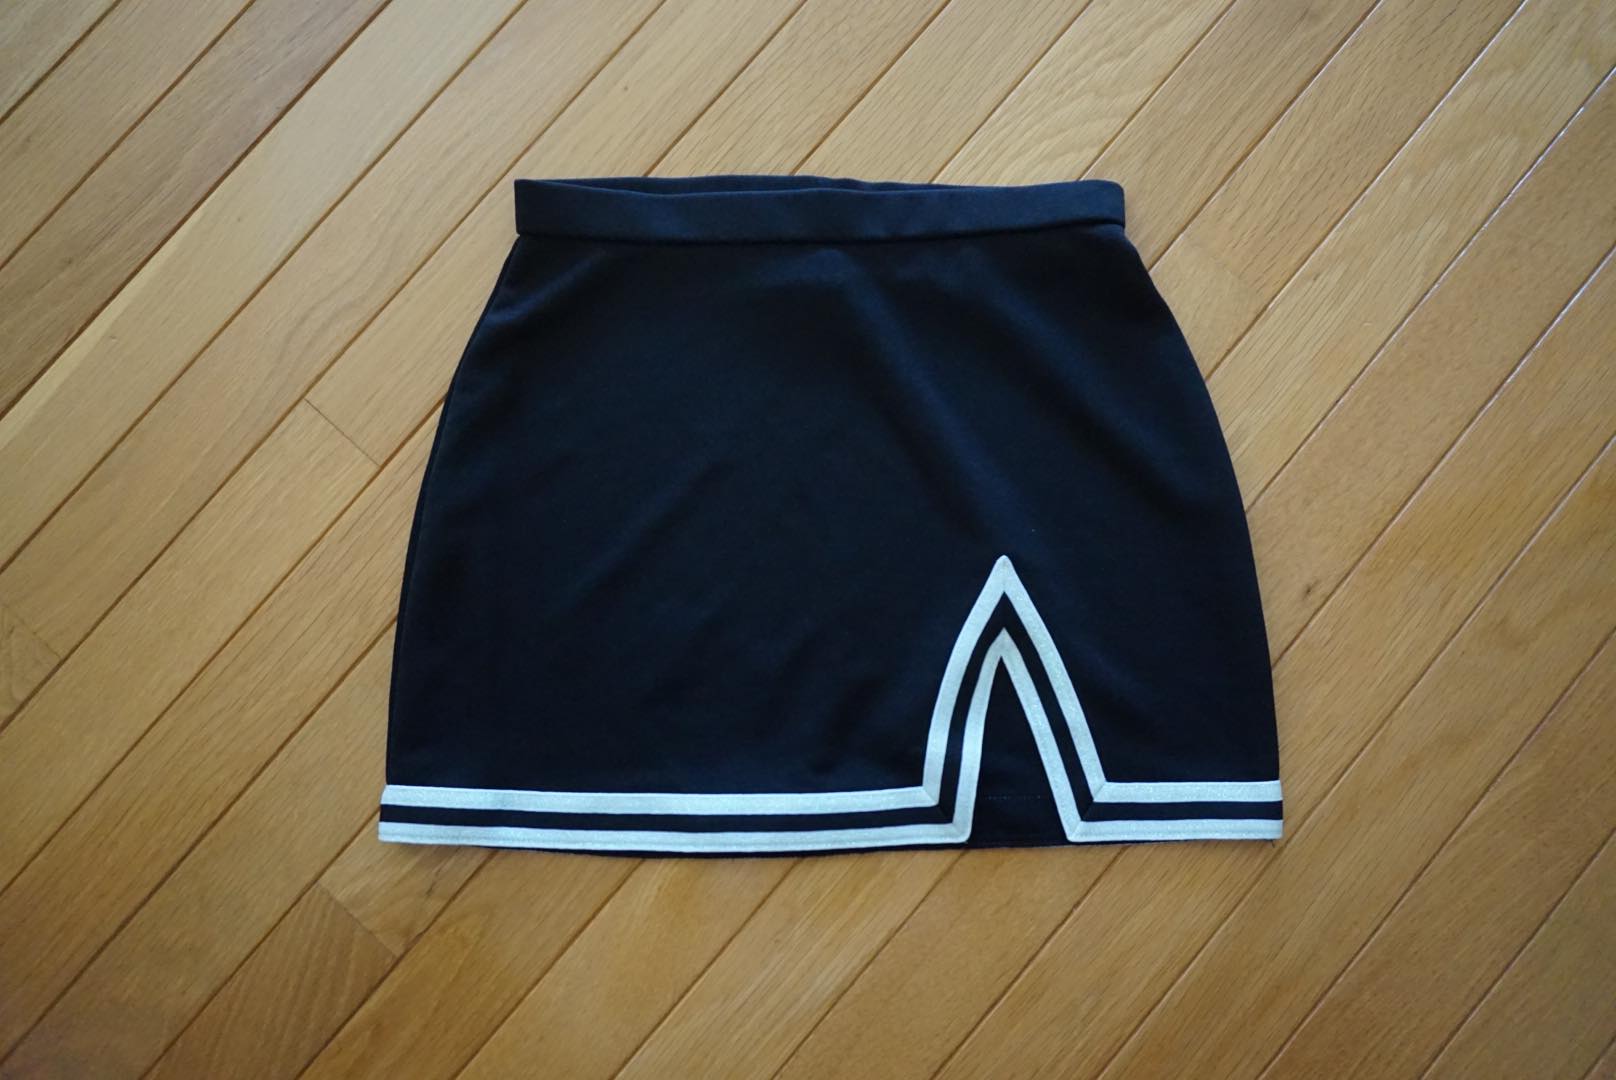 Plain Tailgate Skirt